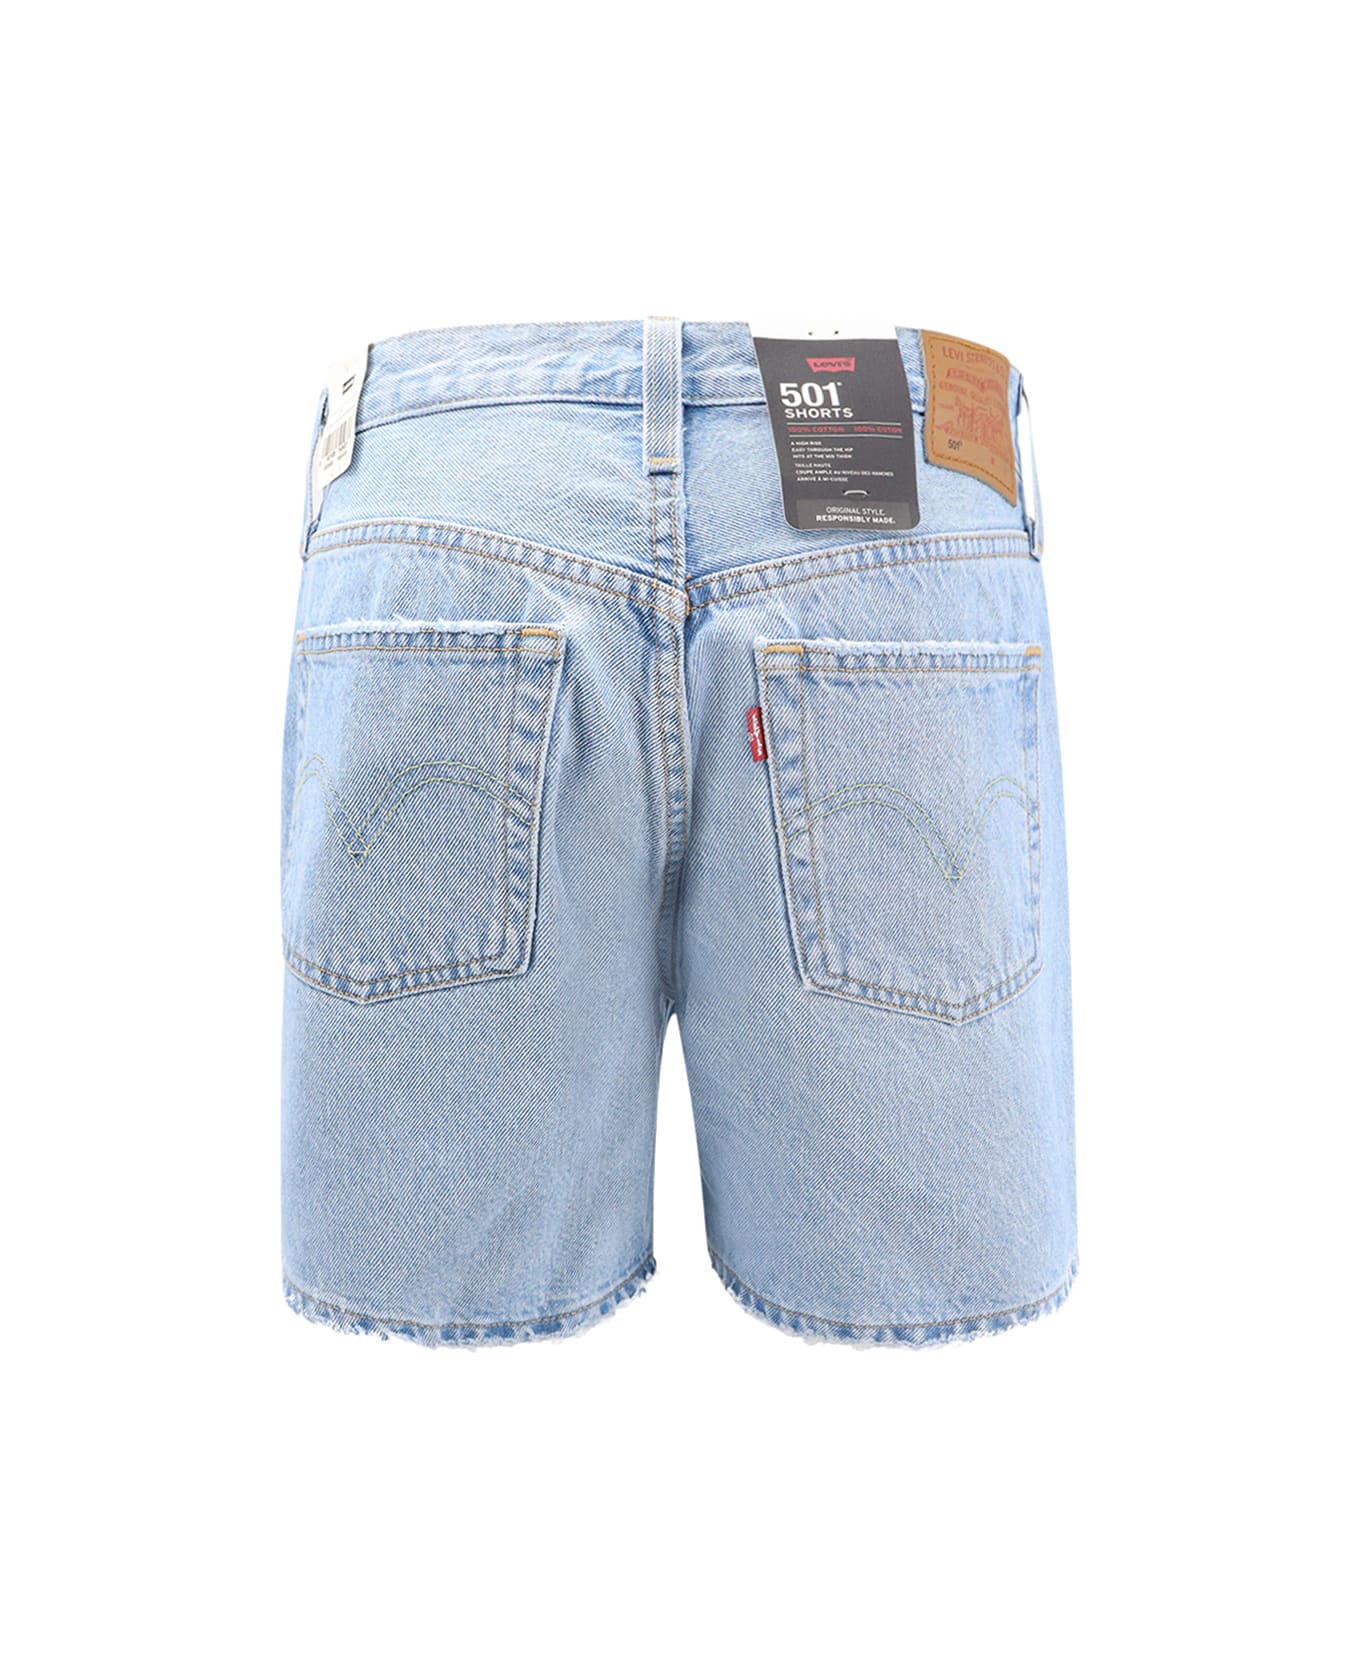 Levi's Shorts - Clear Blue ショートパンツ